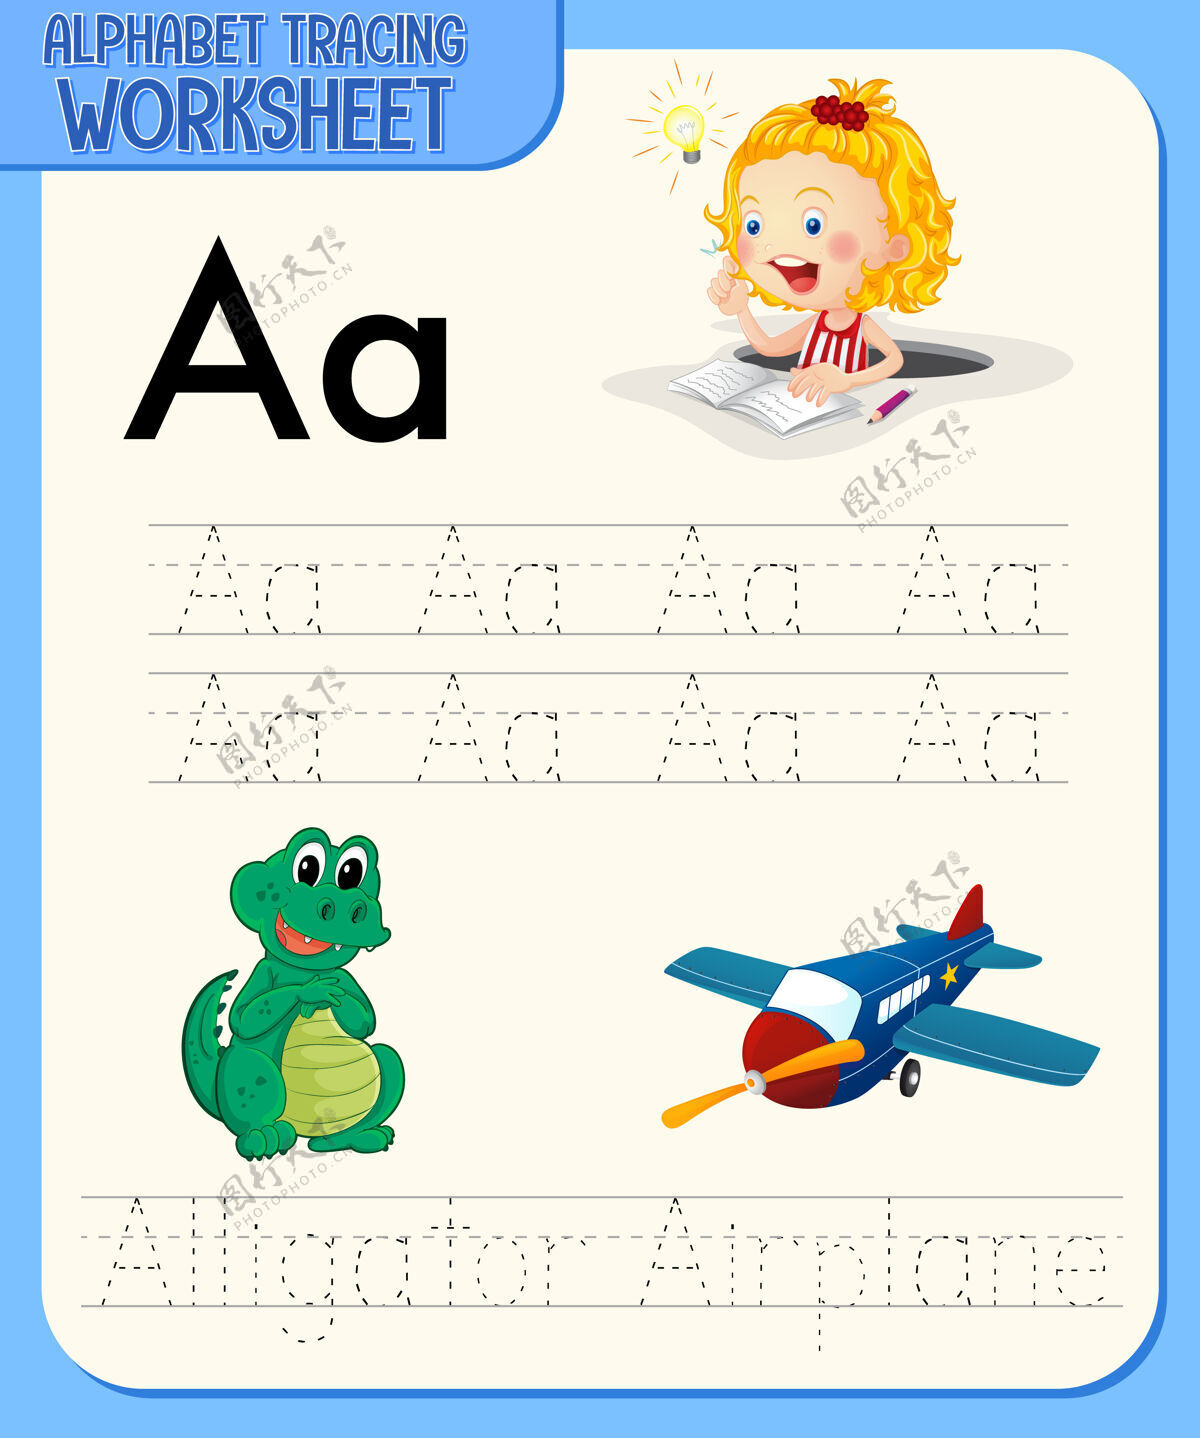 书籍字母表跟踪与字母和词汇工作表练习语言幼儿园